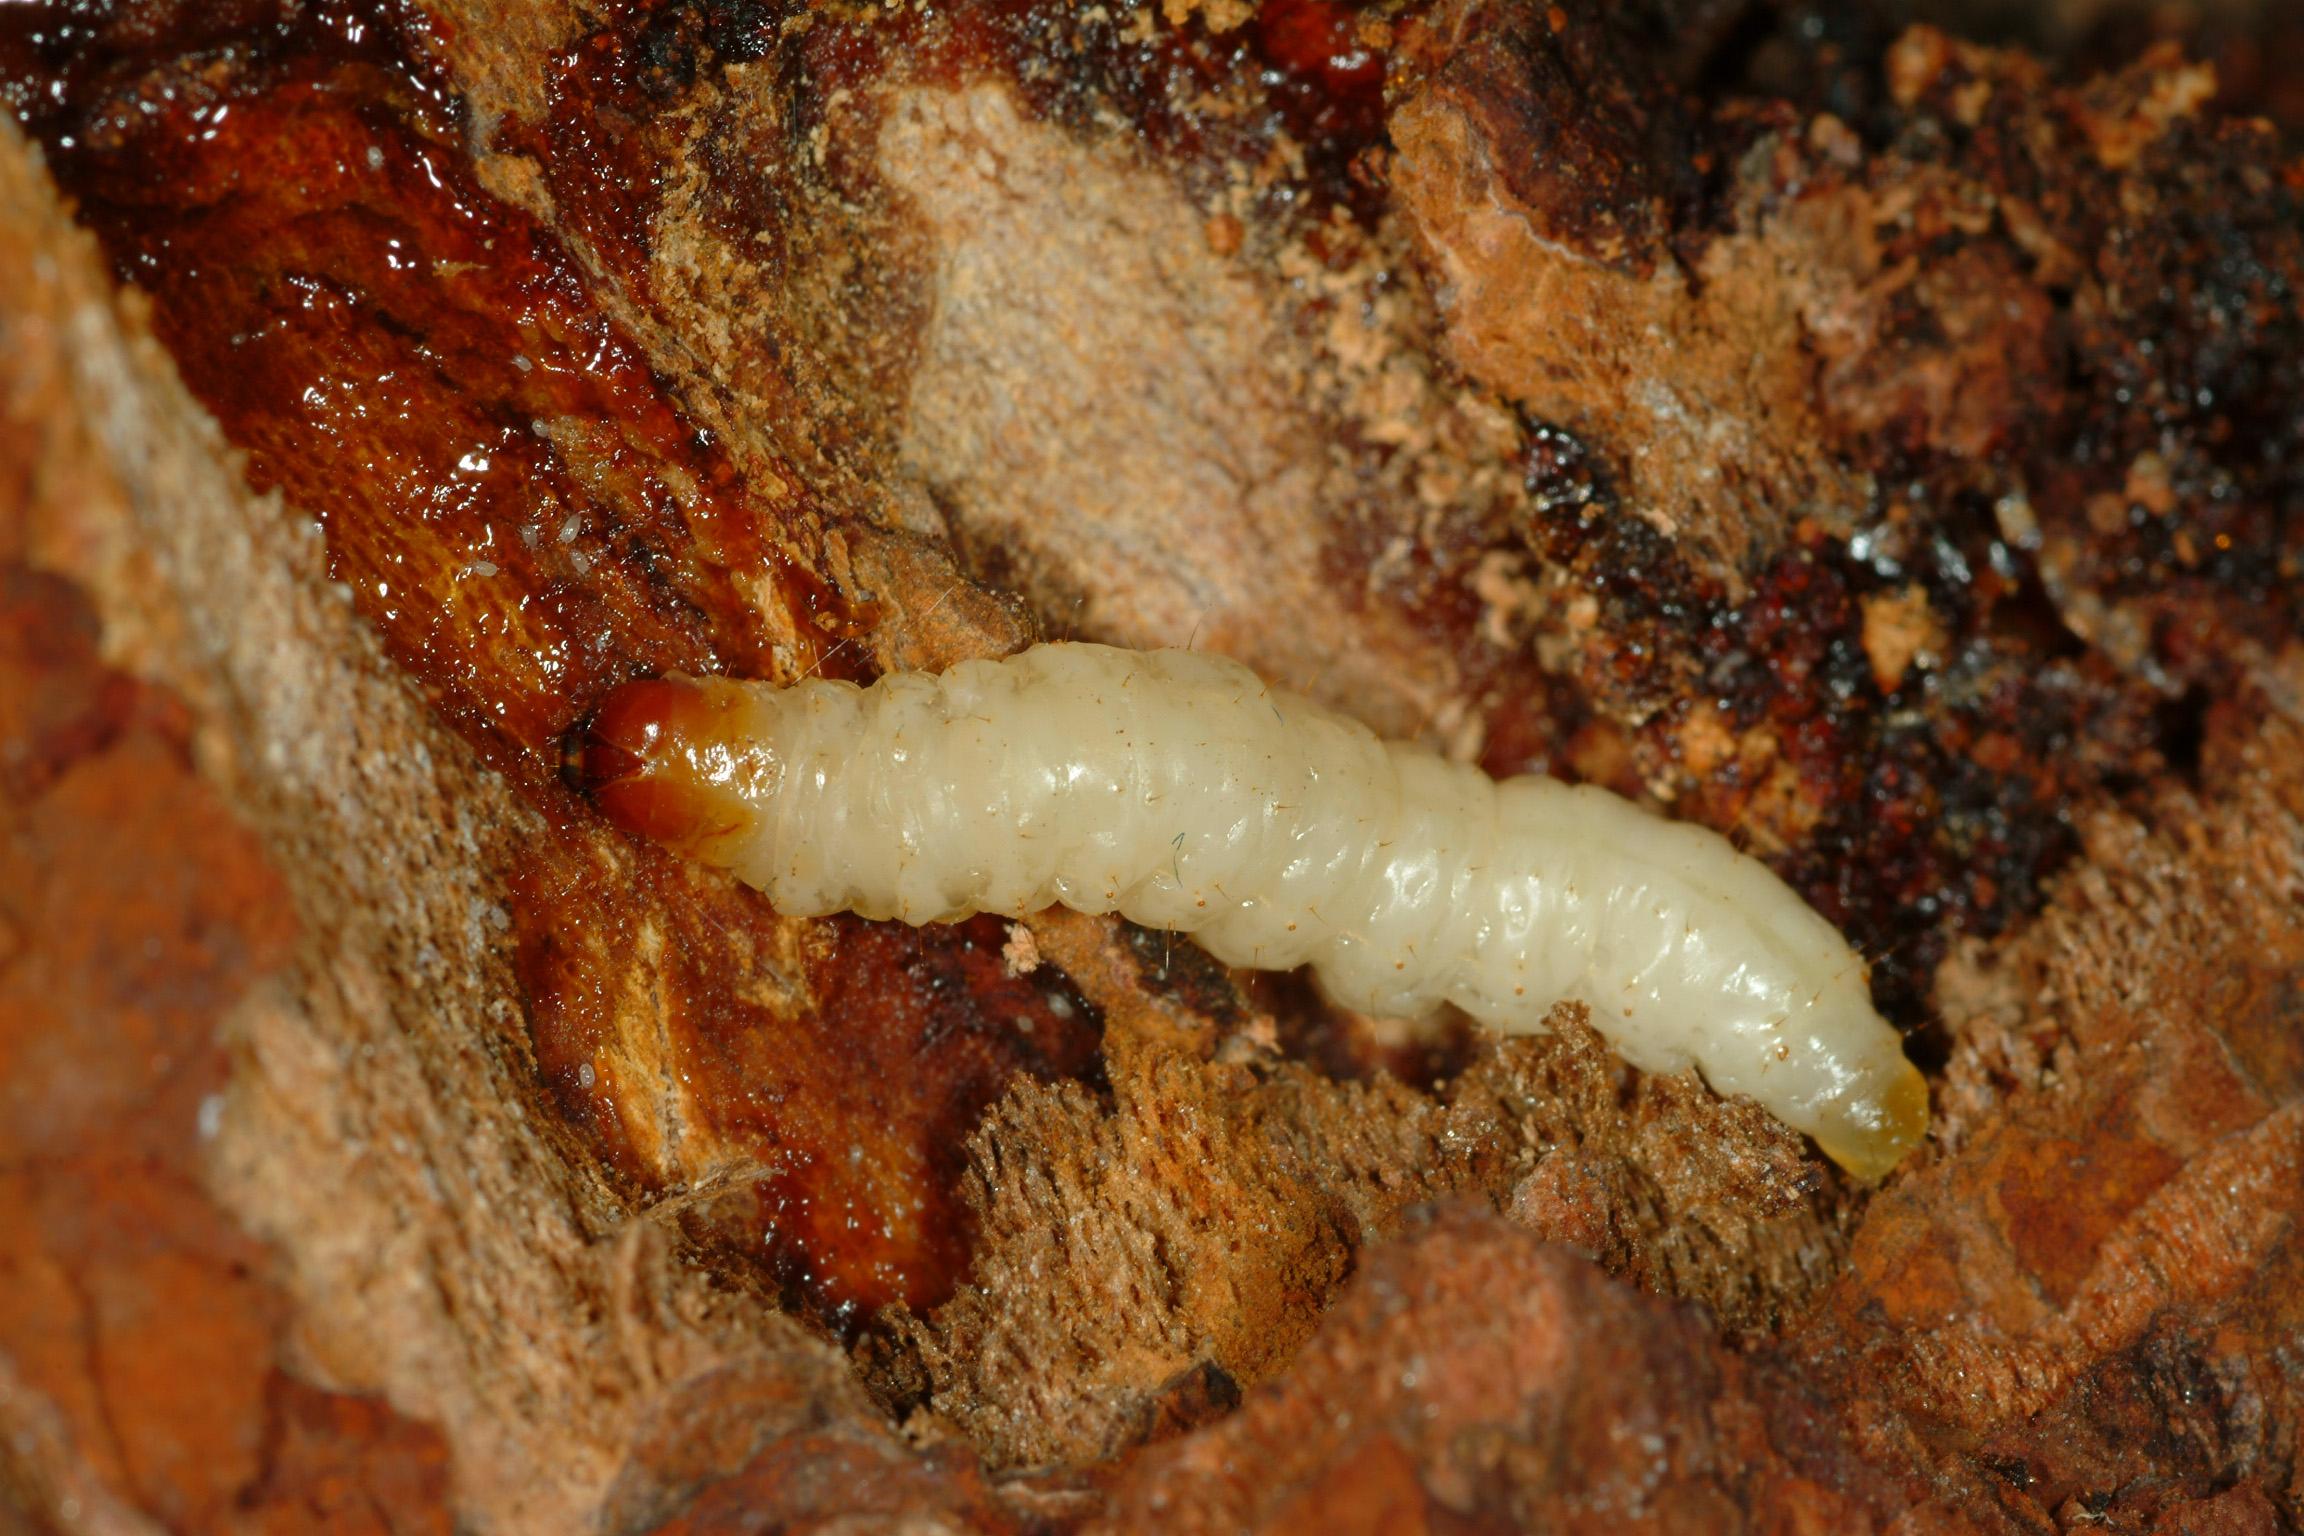 Dogwood borer larva (Bessin, UKY)